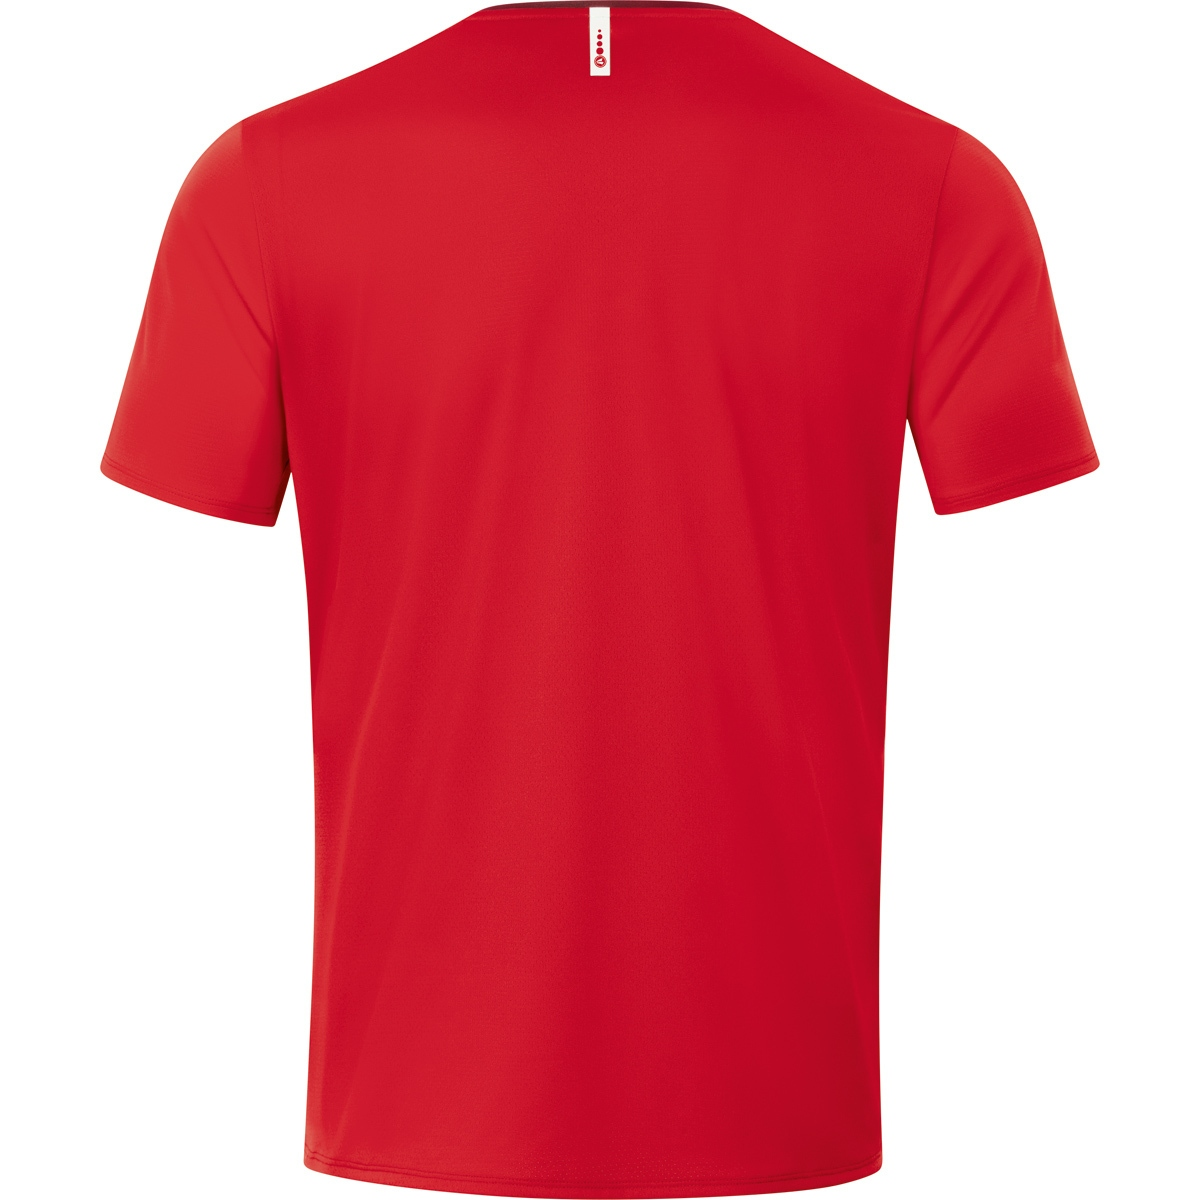 JAKO T-Shirt Champ 6120 Gr. XL, rot/weinrot, 2.0 Herren